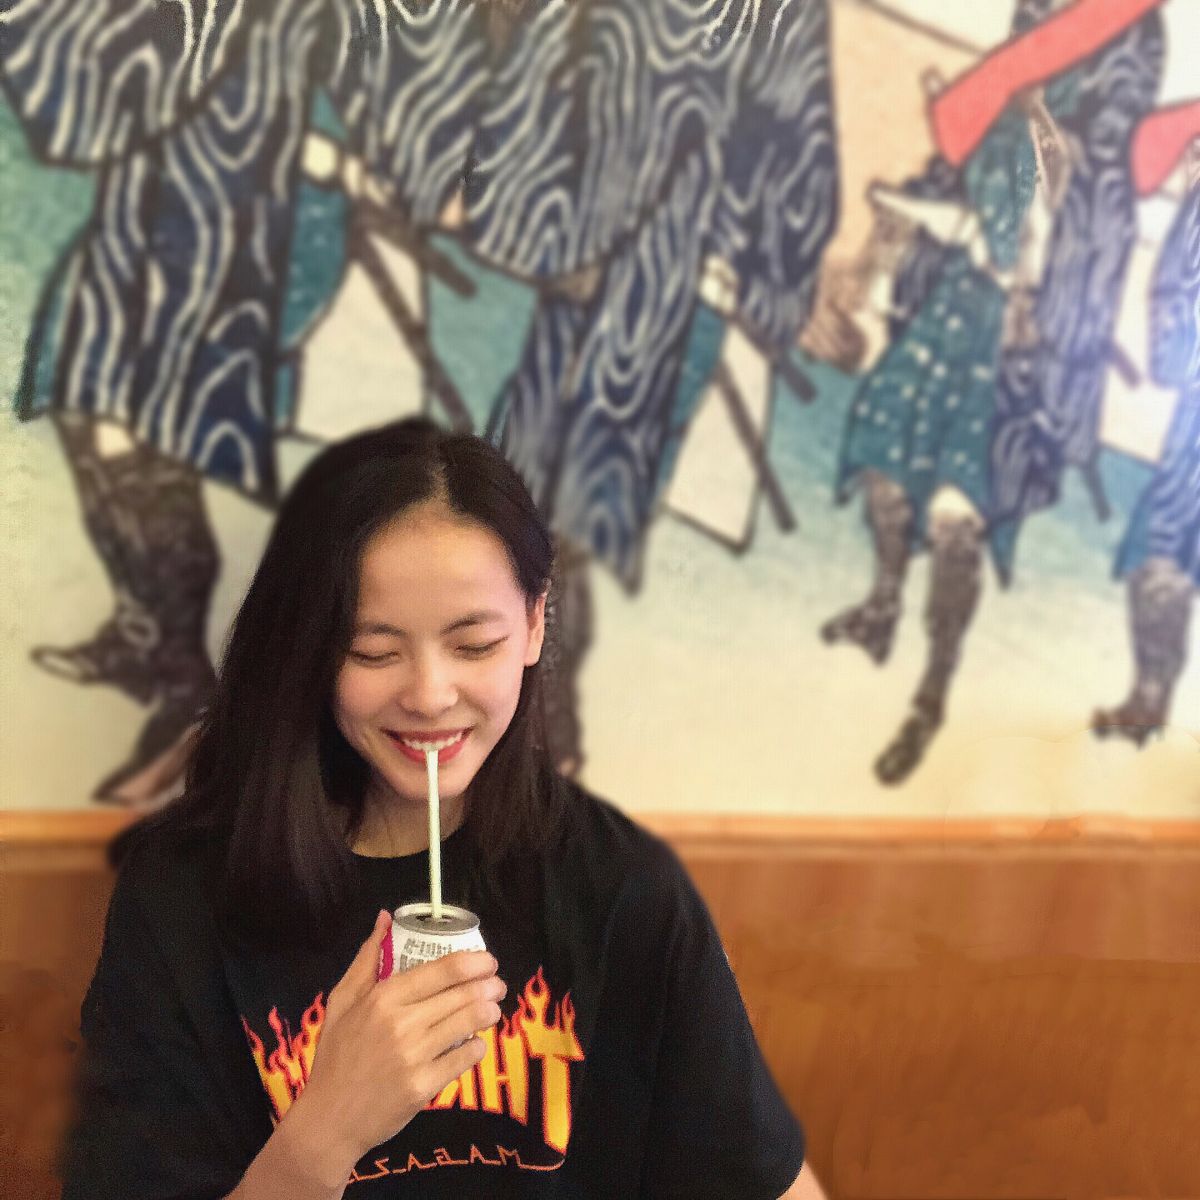 WCBA专访:我叫杨舒予,今年16岁